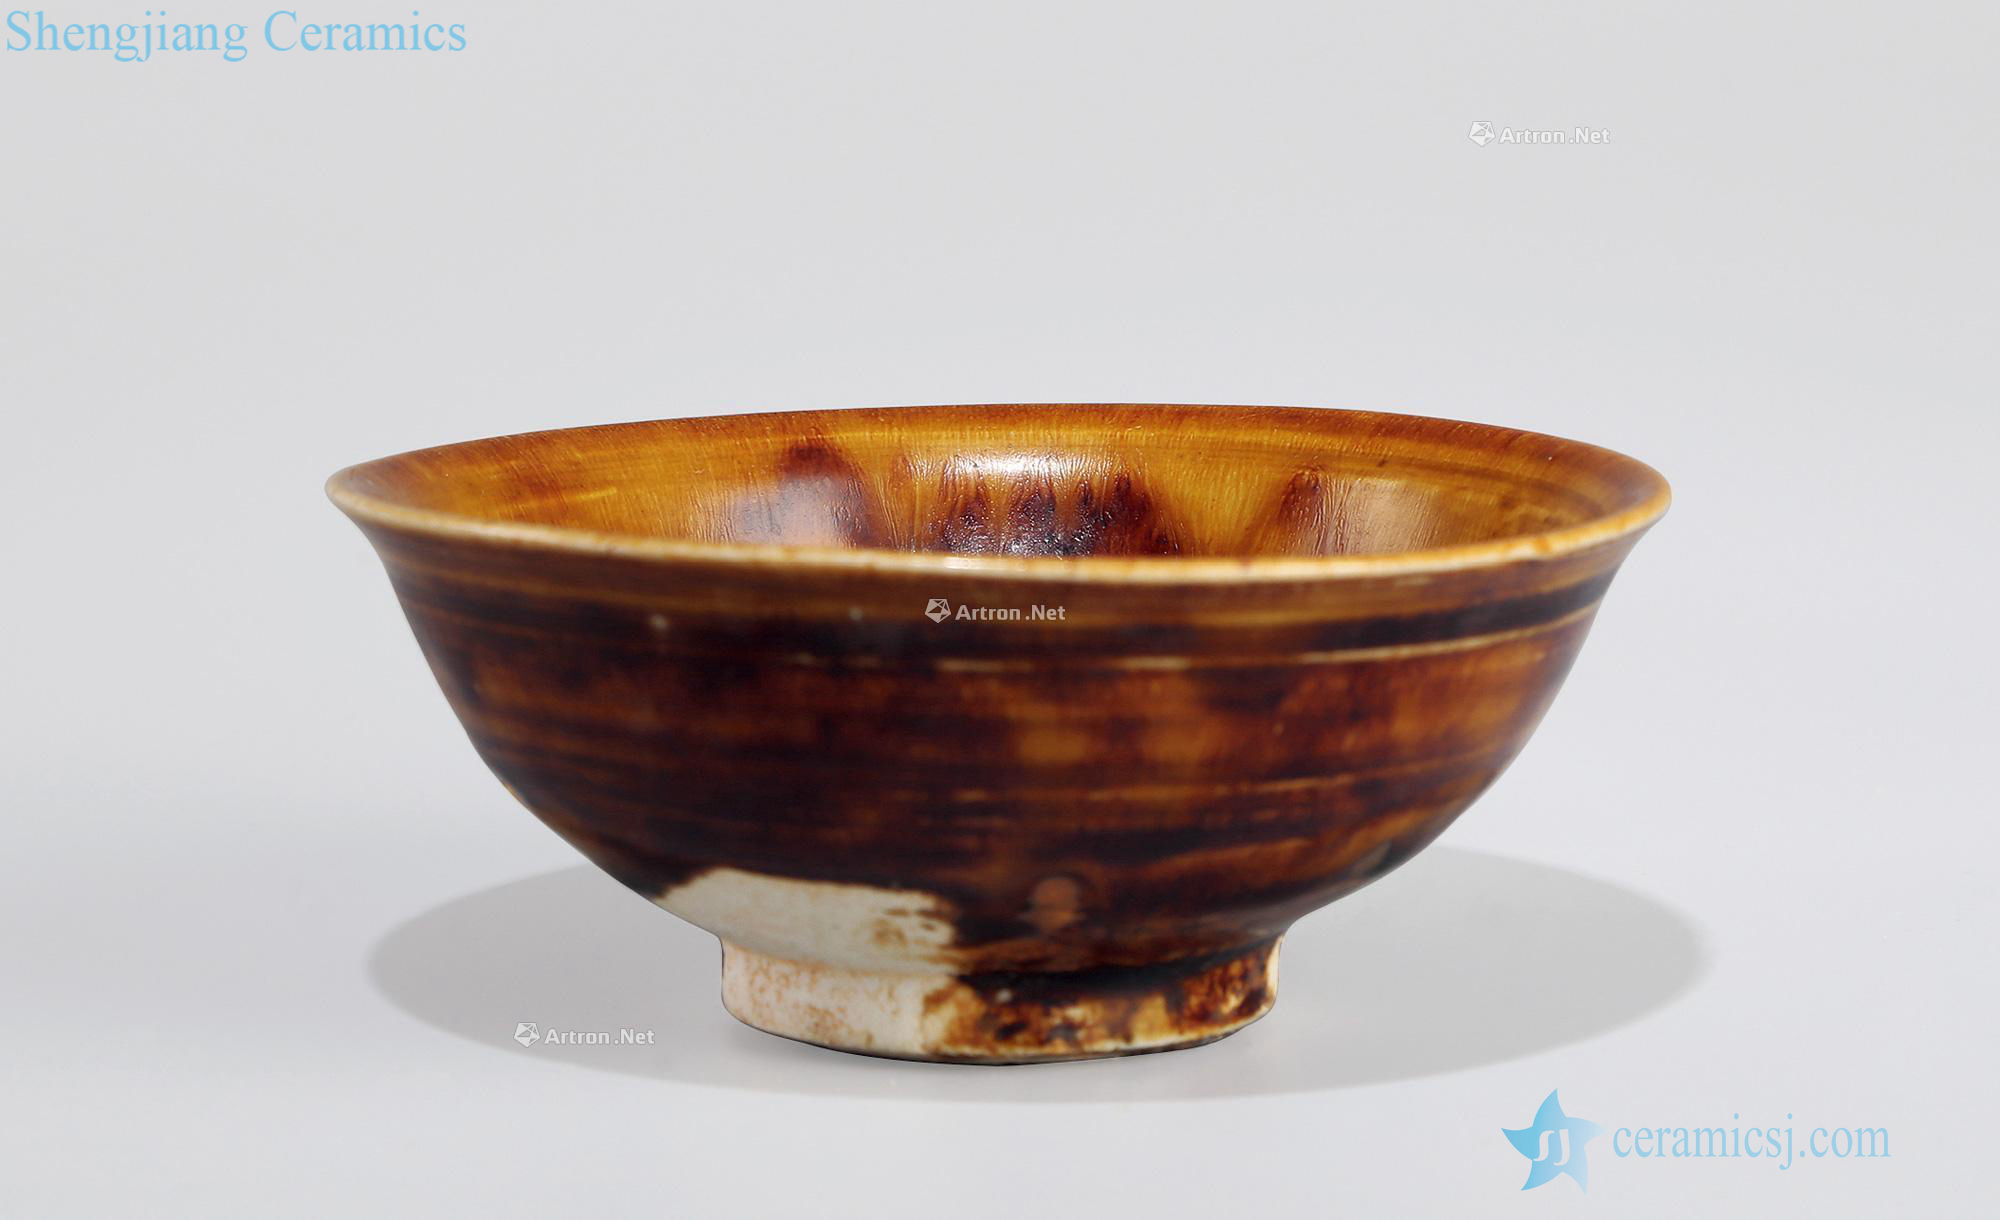 The song dynasty Jizhou kiln sauce glaze bowls